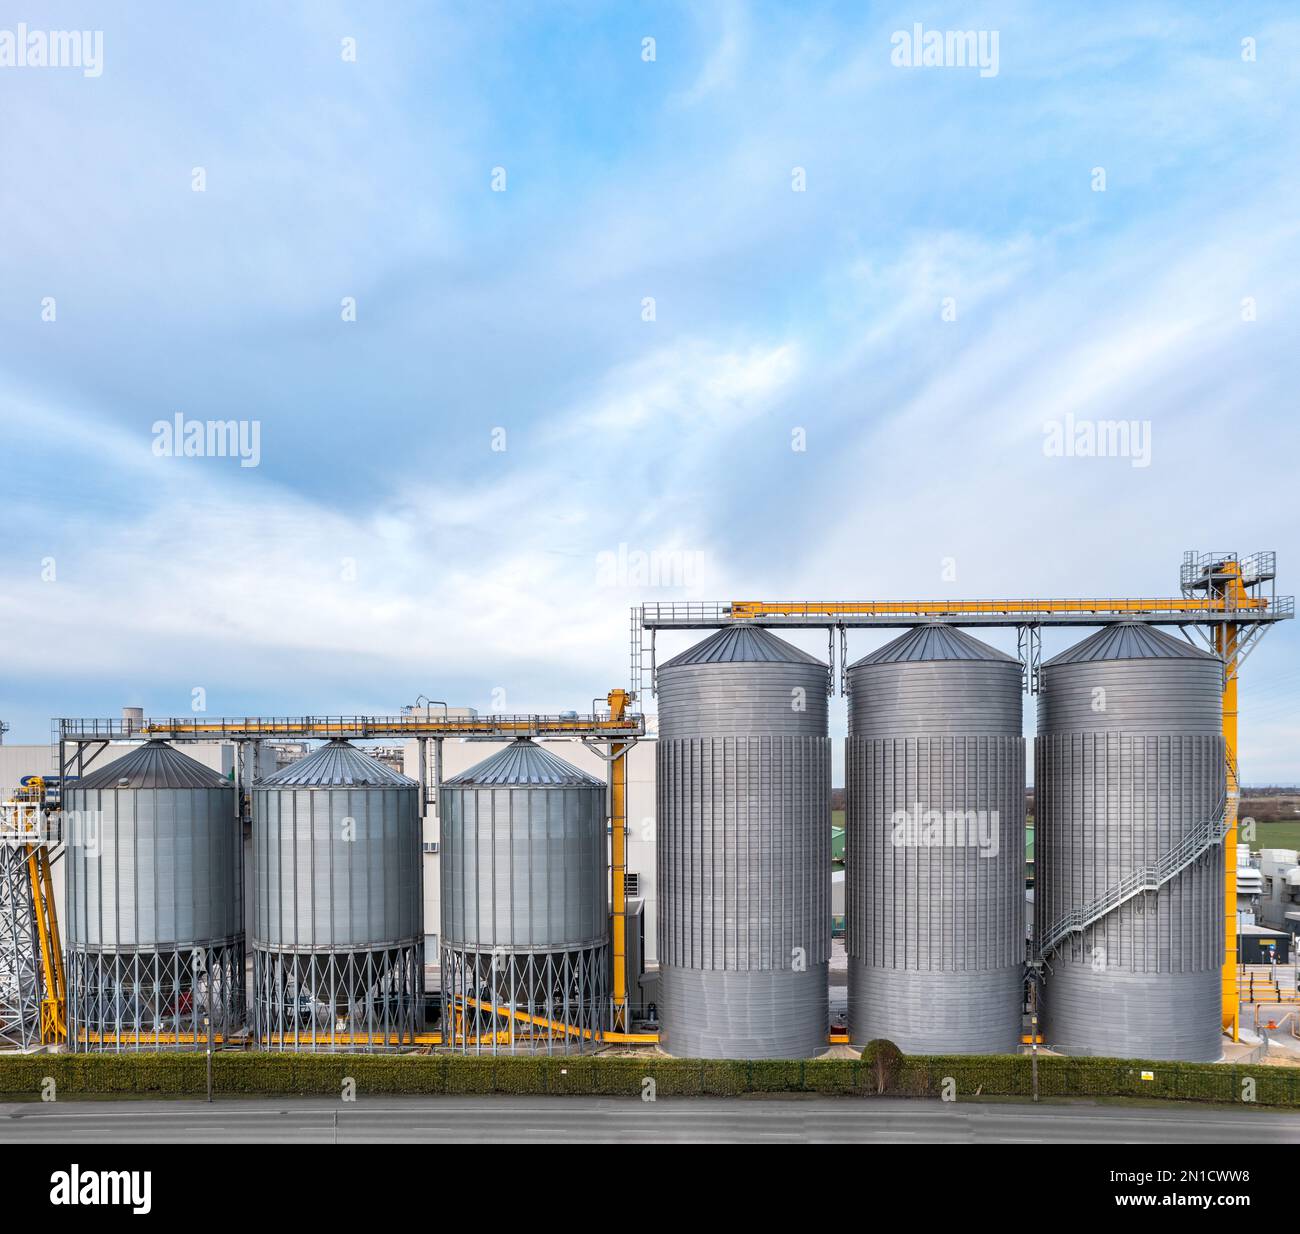 Una fila di serbatoi di stoccaggio industriali o silos su larga scala in un impianto chimico con spazio di copia sopra Foto Stock